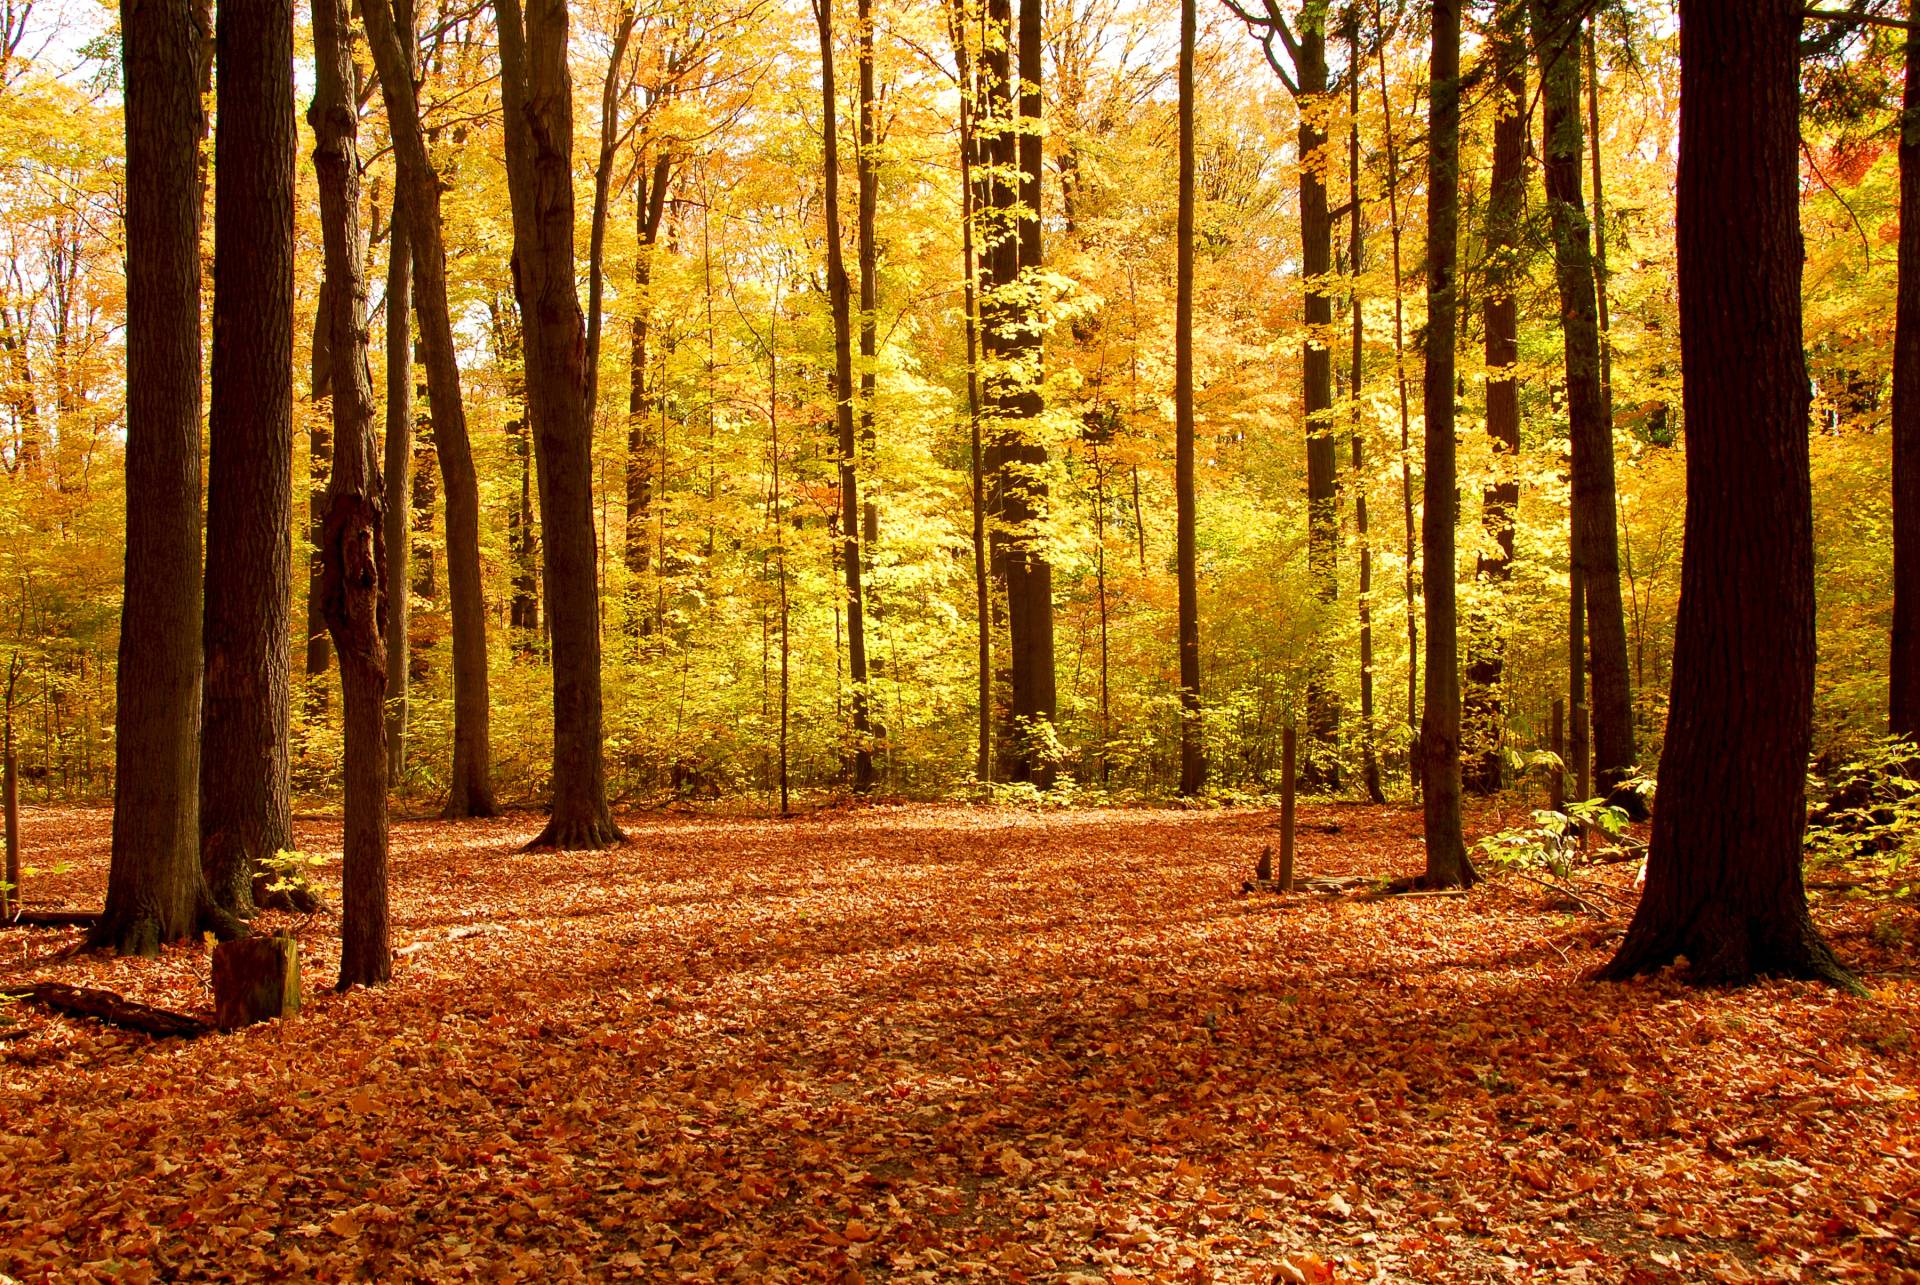 Papermoon Fototapete "Autumn Forest" von Papermoon